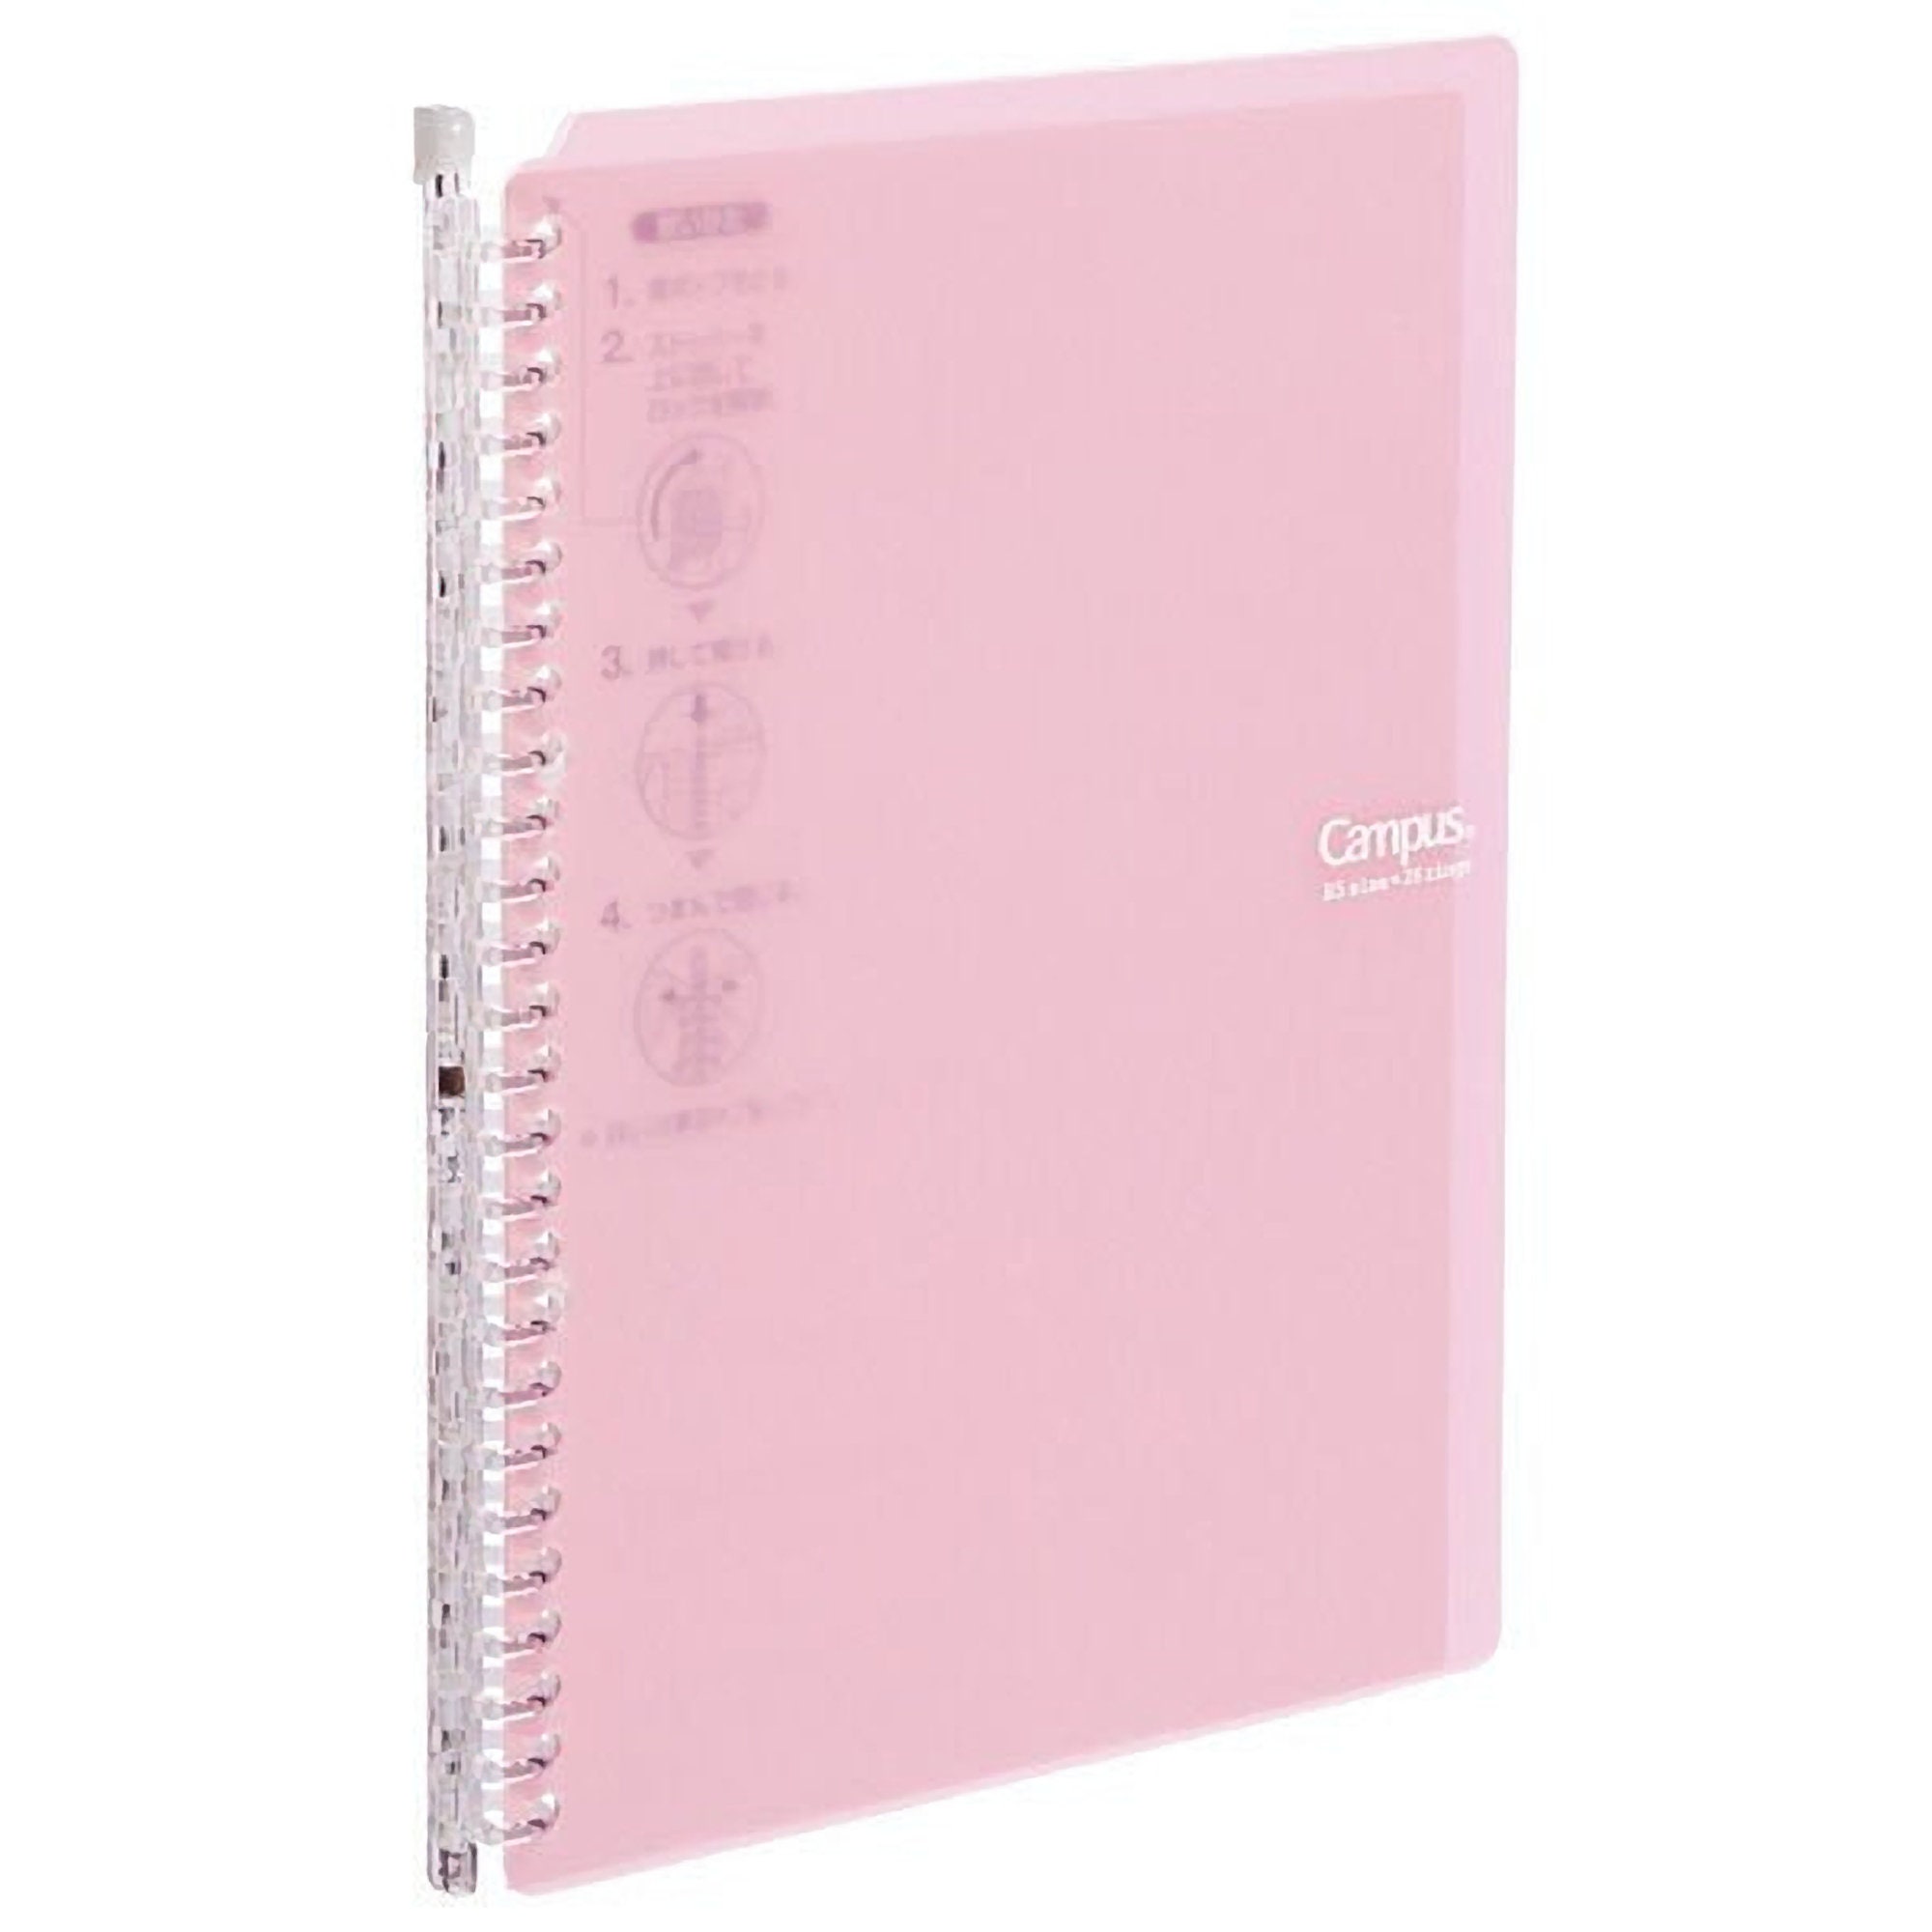 Kokuyo Campus Watercolor Notebook - B5 - 8 mm Ruled - Pink